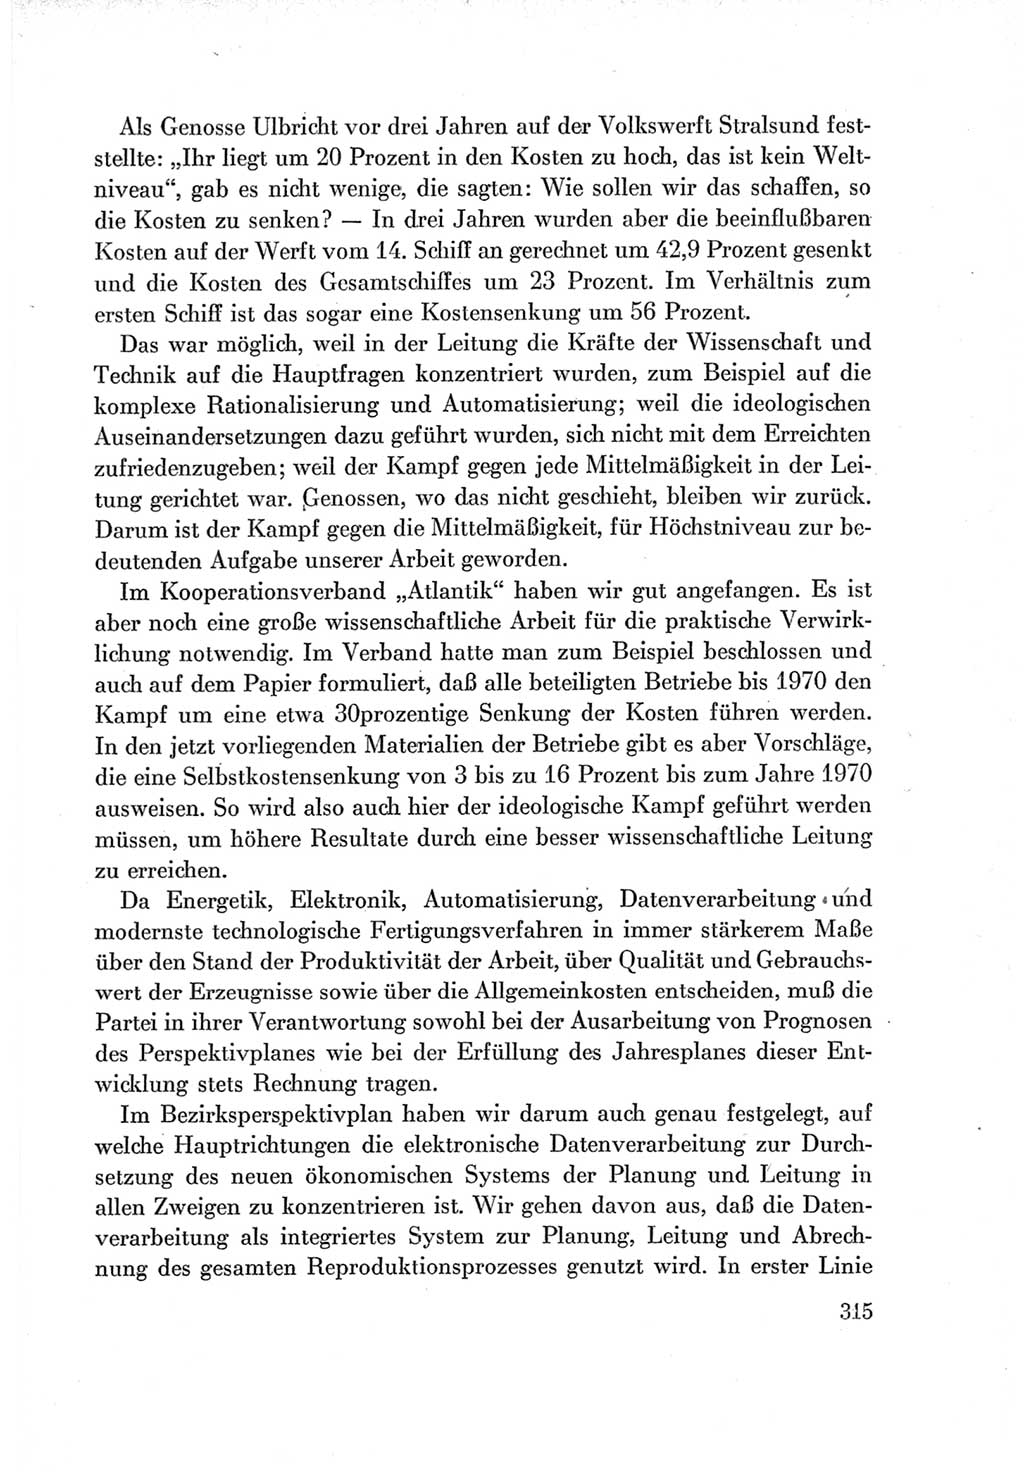 Protokoll der Verhandlungen des Ⅶ. Parteitages der Sozialistischen Einheitspartei Deutschlands (SED) [Deutsche Demokratische Republik (DDR)] 1967, Band Ⅰ, Seite 315 (Prot. Verh. Ⅶ. PT SED DDR 1967, Bd. Ⅰ, S. 315)